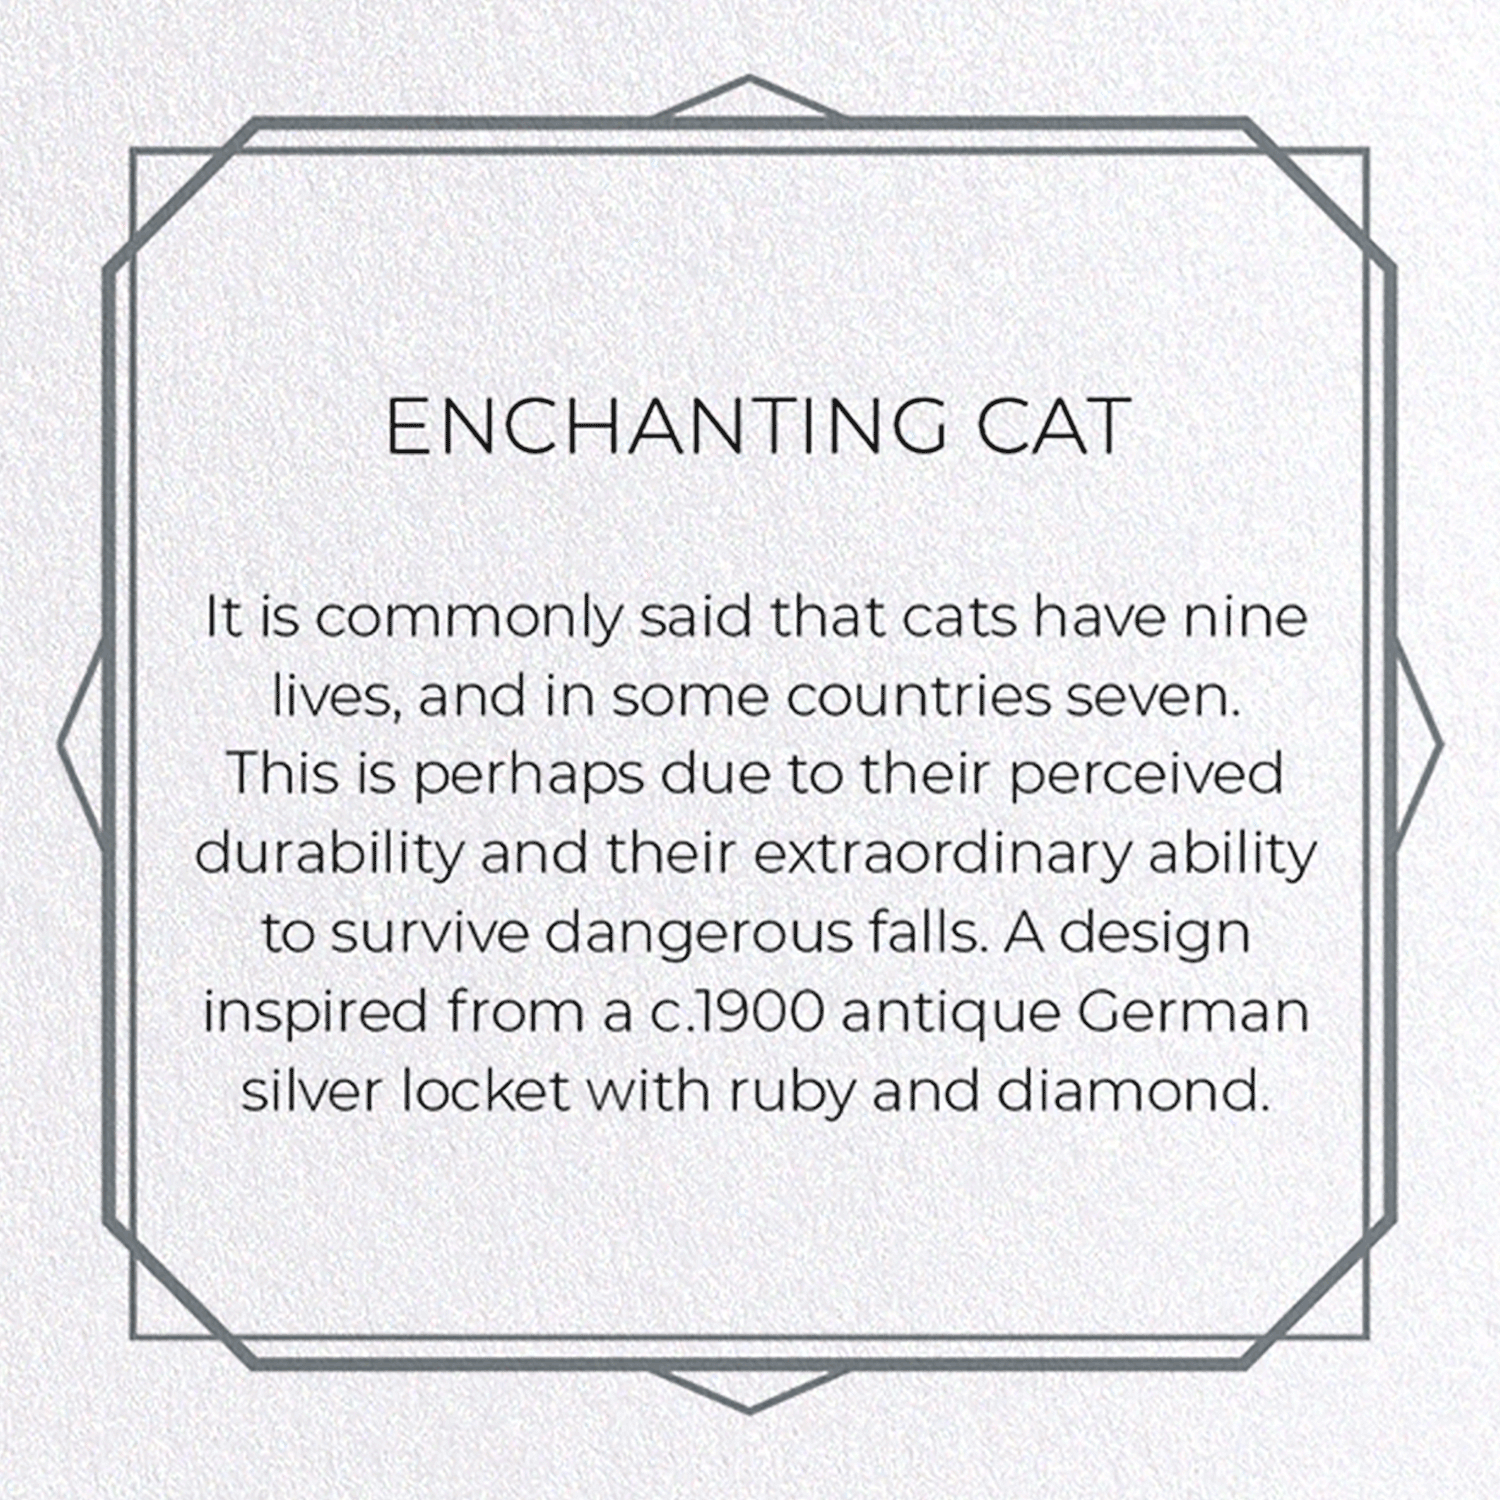 ENCHANTING CAT